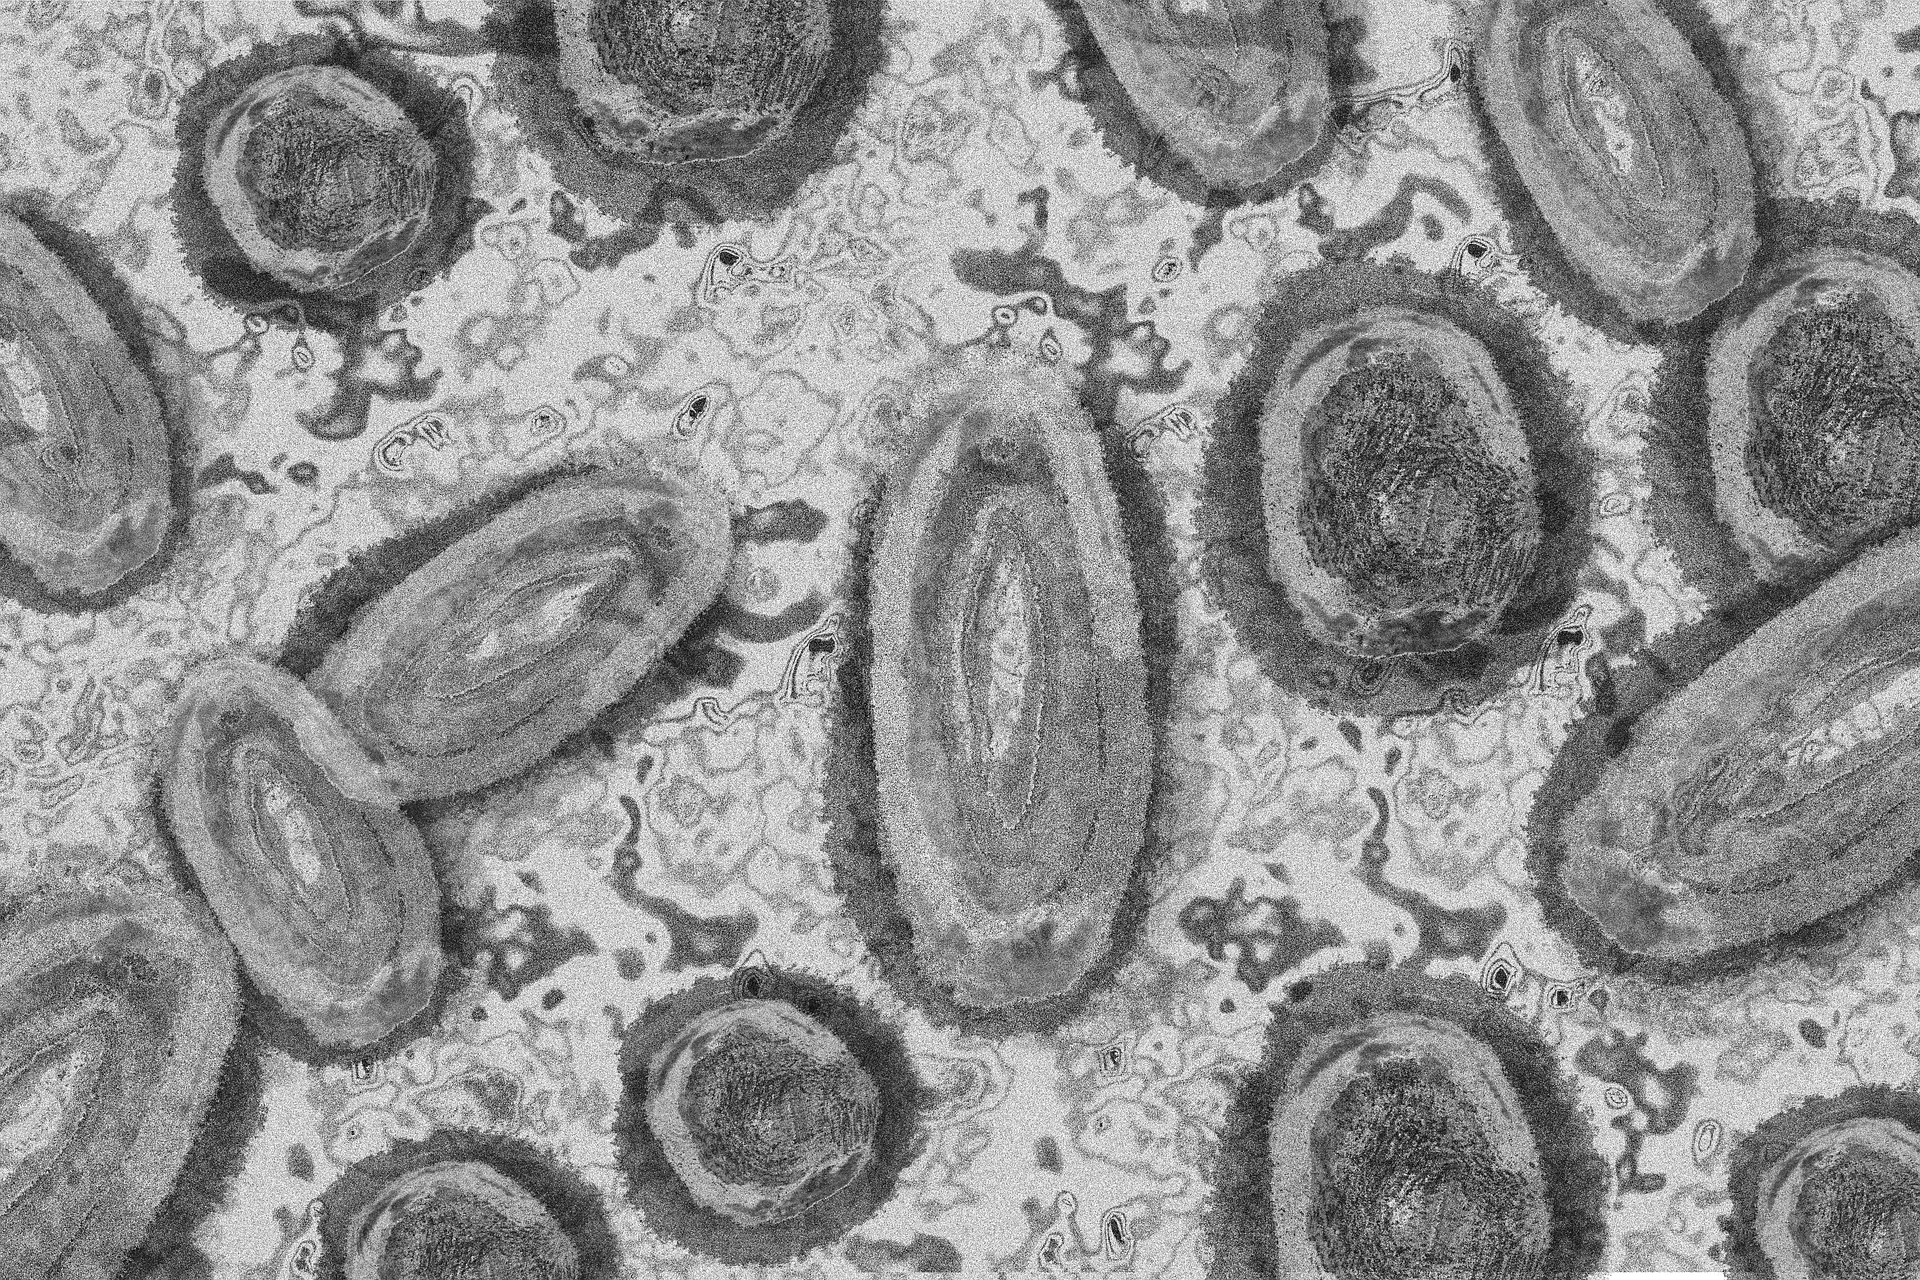 étude scientifique internationale sur la variole du singe